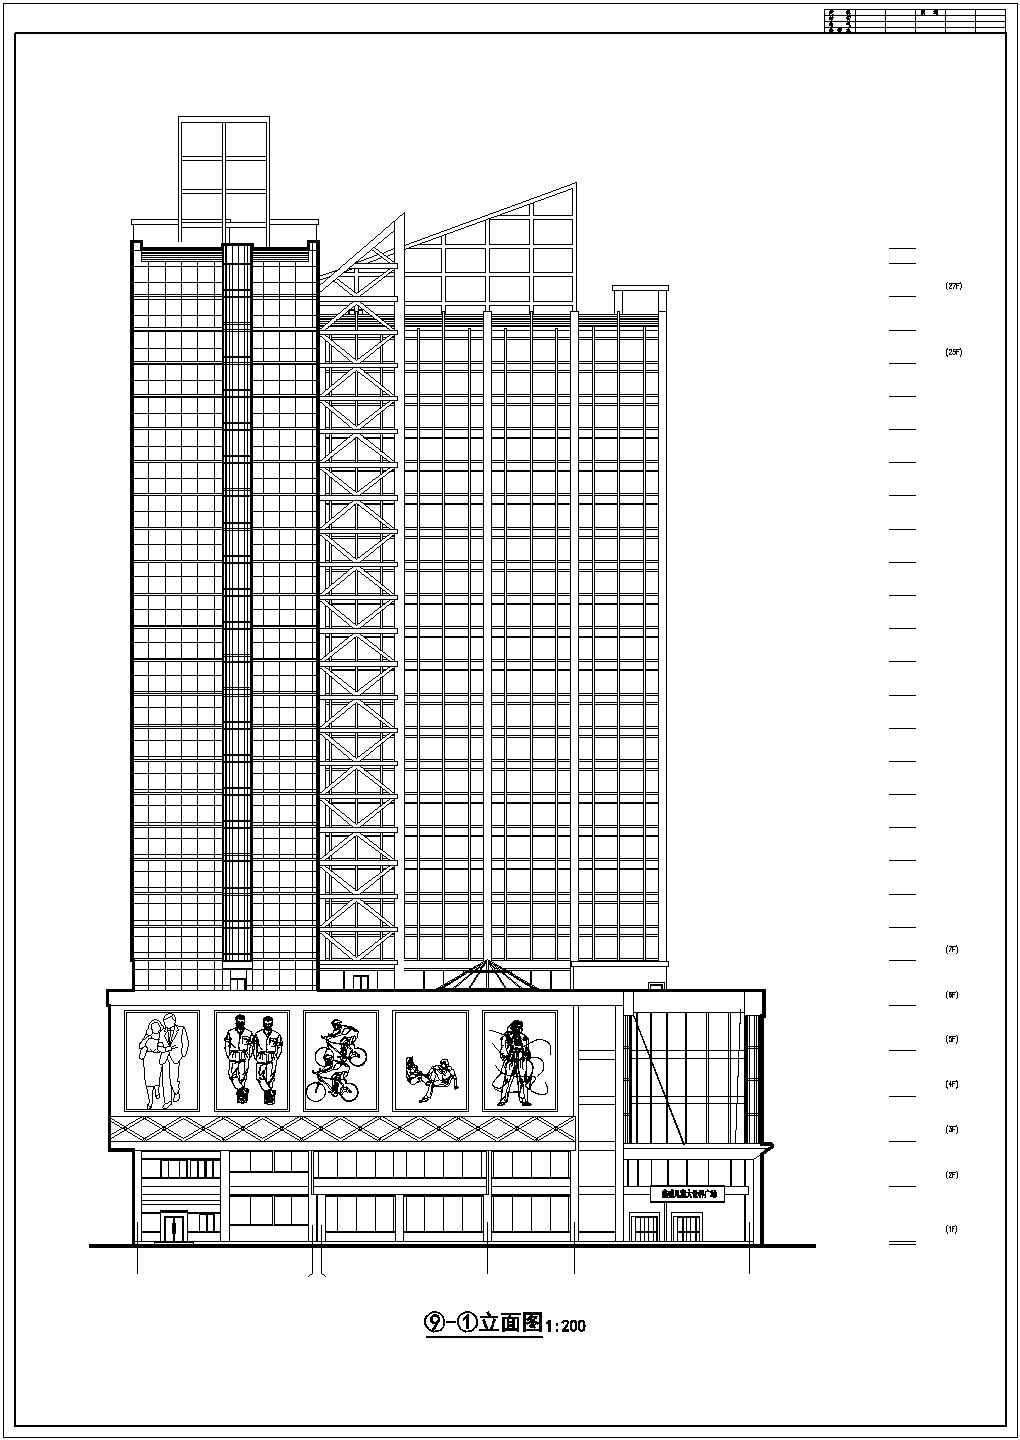 高层综合商业楼大型建筑施工图